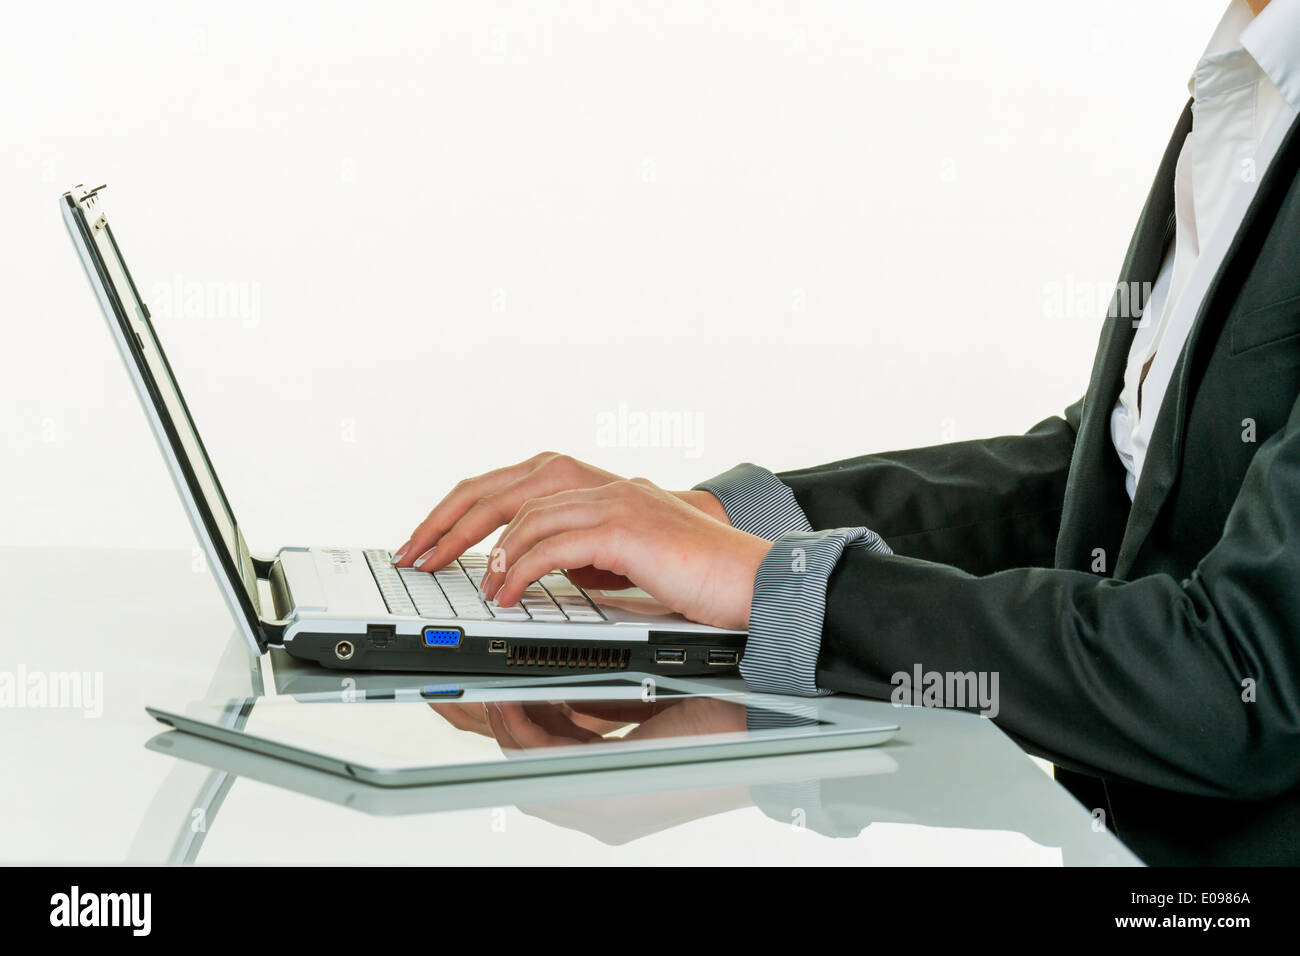 A woman works in an office with a laptop computer, Eine Frau arbeitet in einem Buero mit einem Laptop Computer Stock Photo